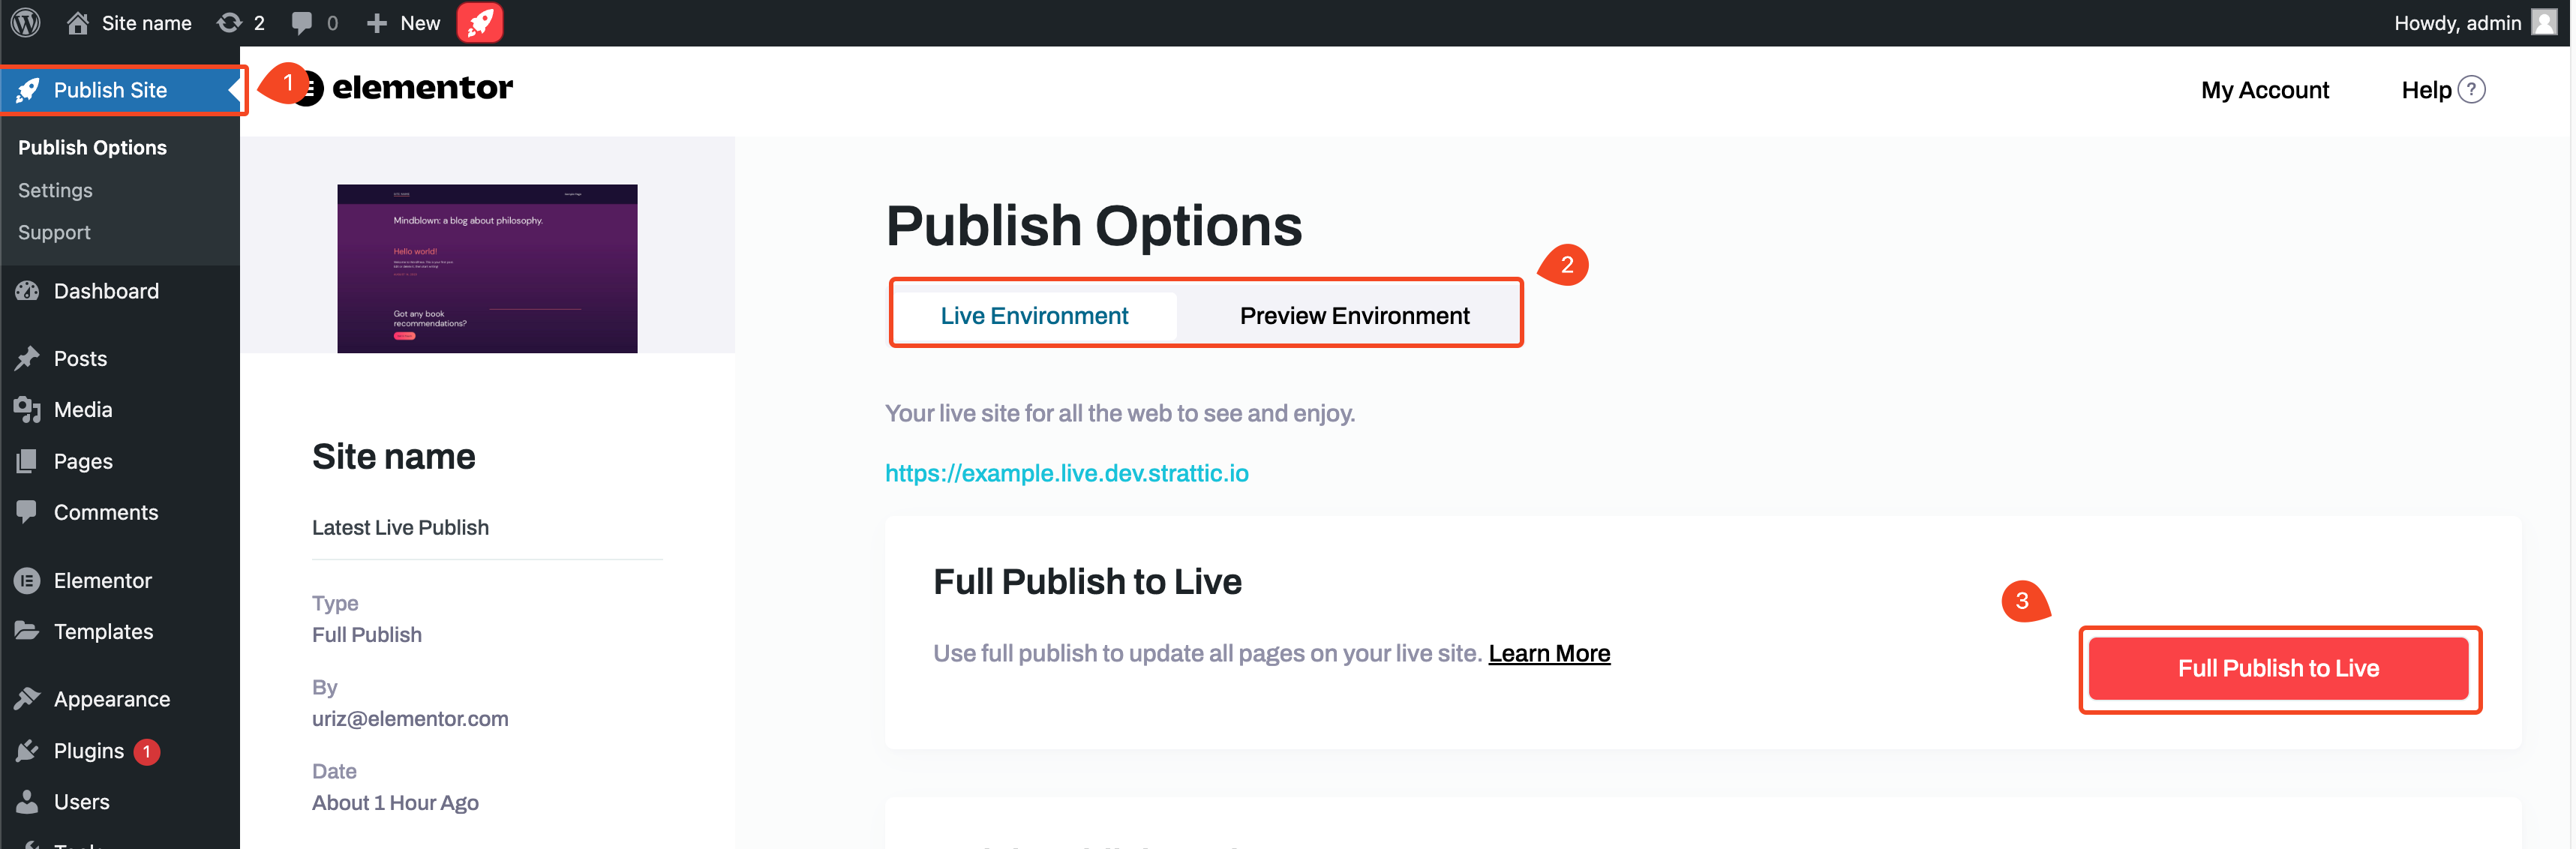 publish options full publish Full Publish 81